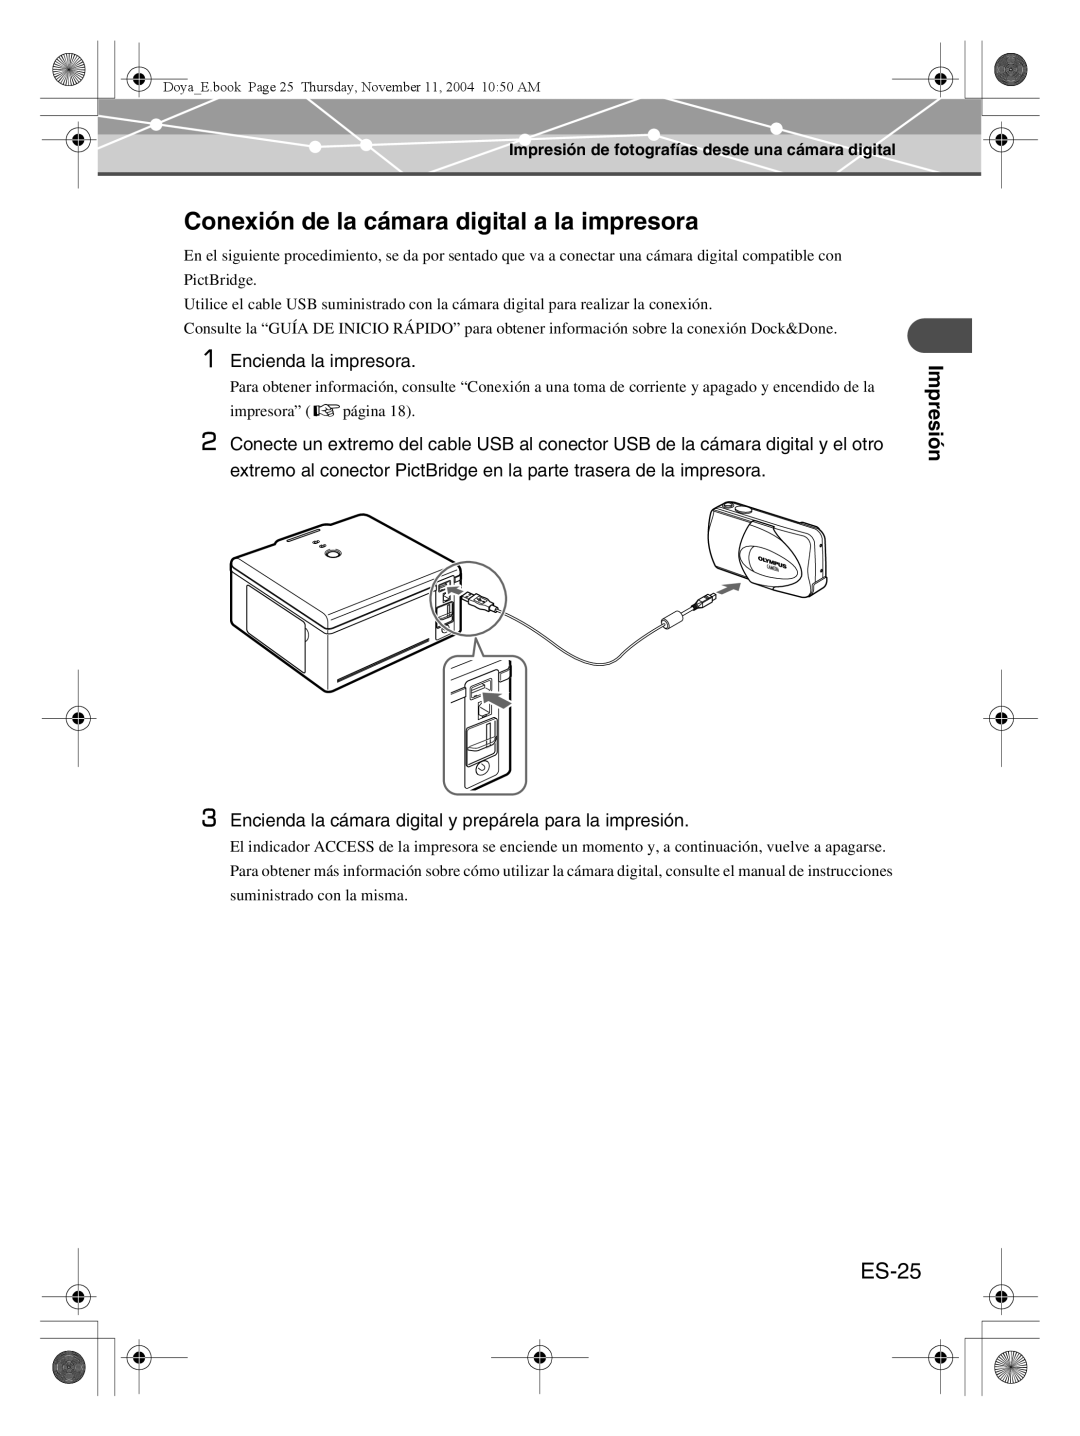 Olympus P-S100 user manual Conexión de la cámara digital a la impresora, ES-25, Impresión 